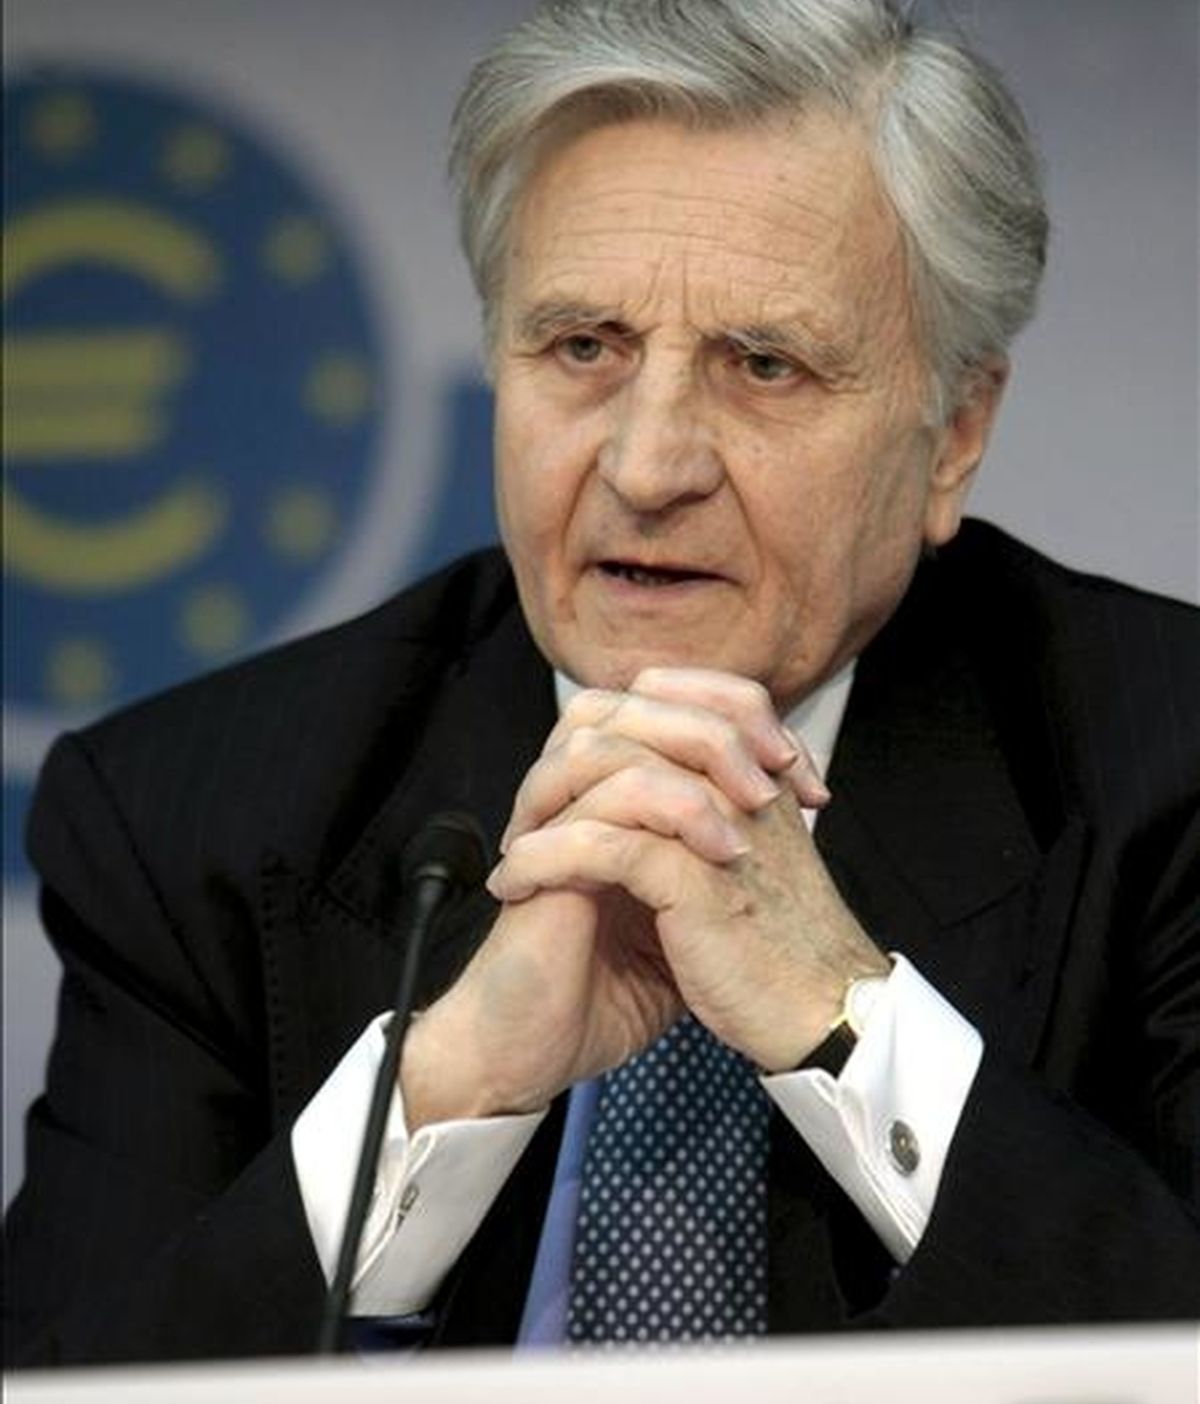 El presidente del Banco Central Europeo (BCE), Jean-Claude Trichet, durante una rueda de prensa en Fráncfort, Alemania. EFE/Archivo